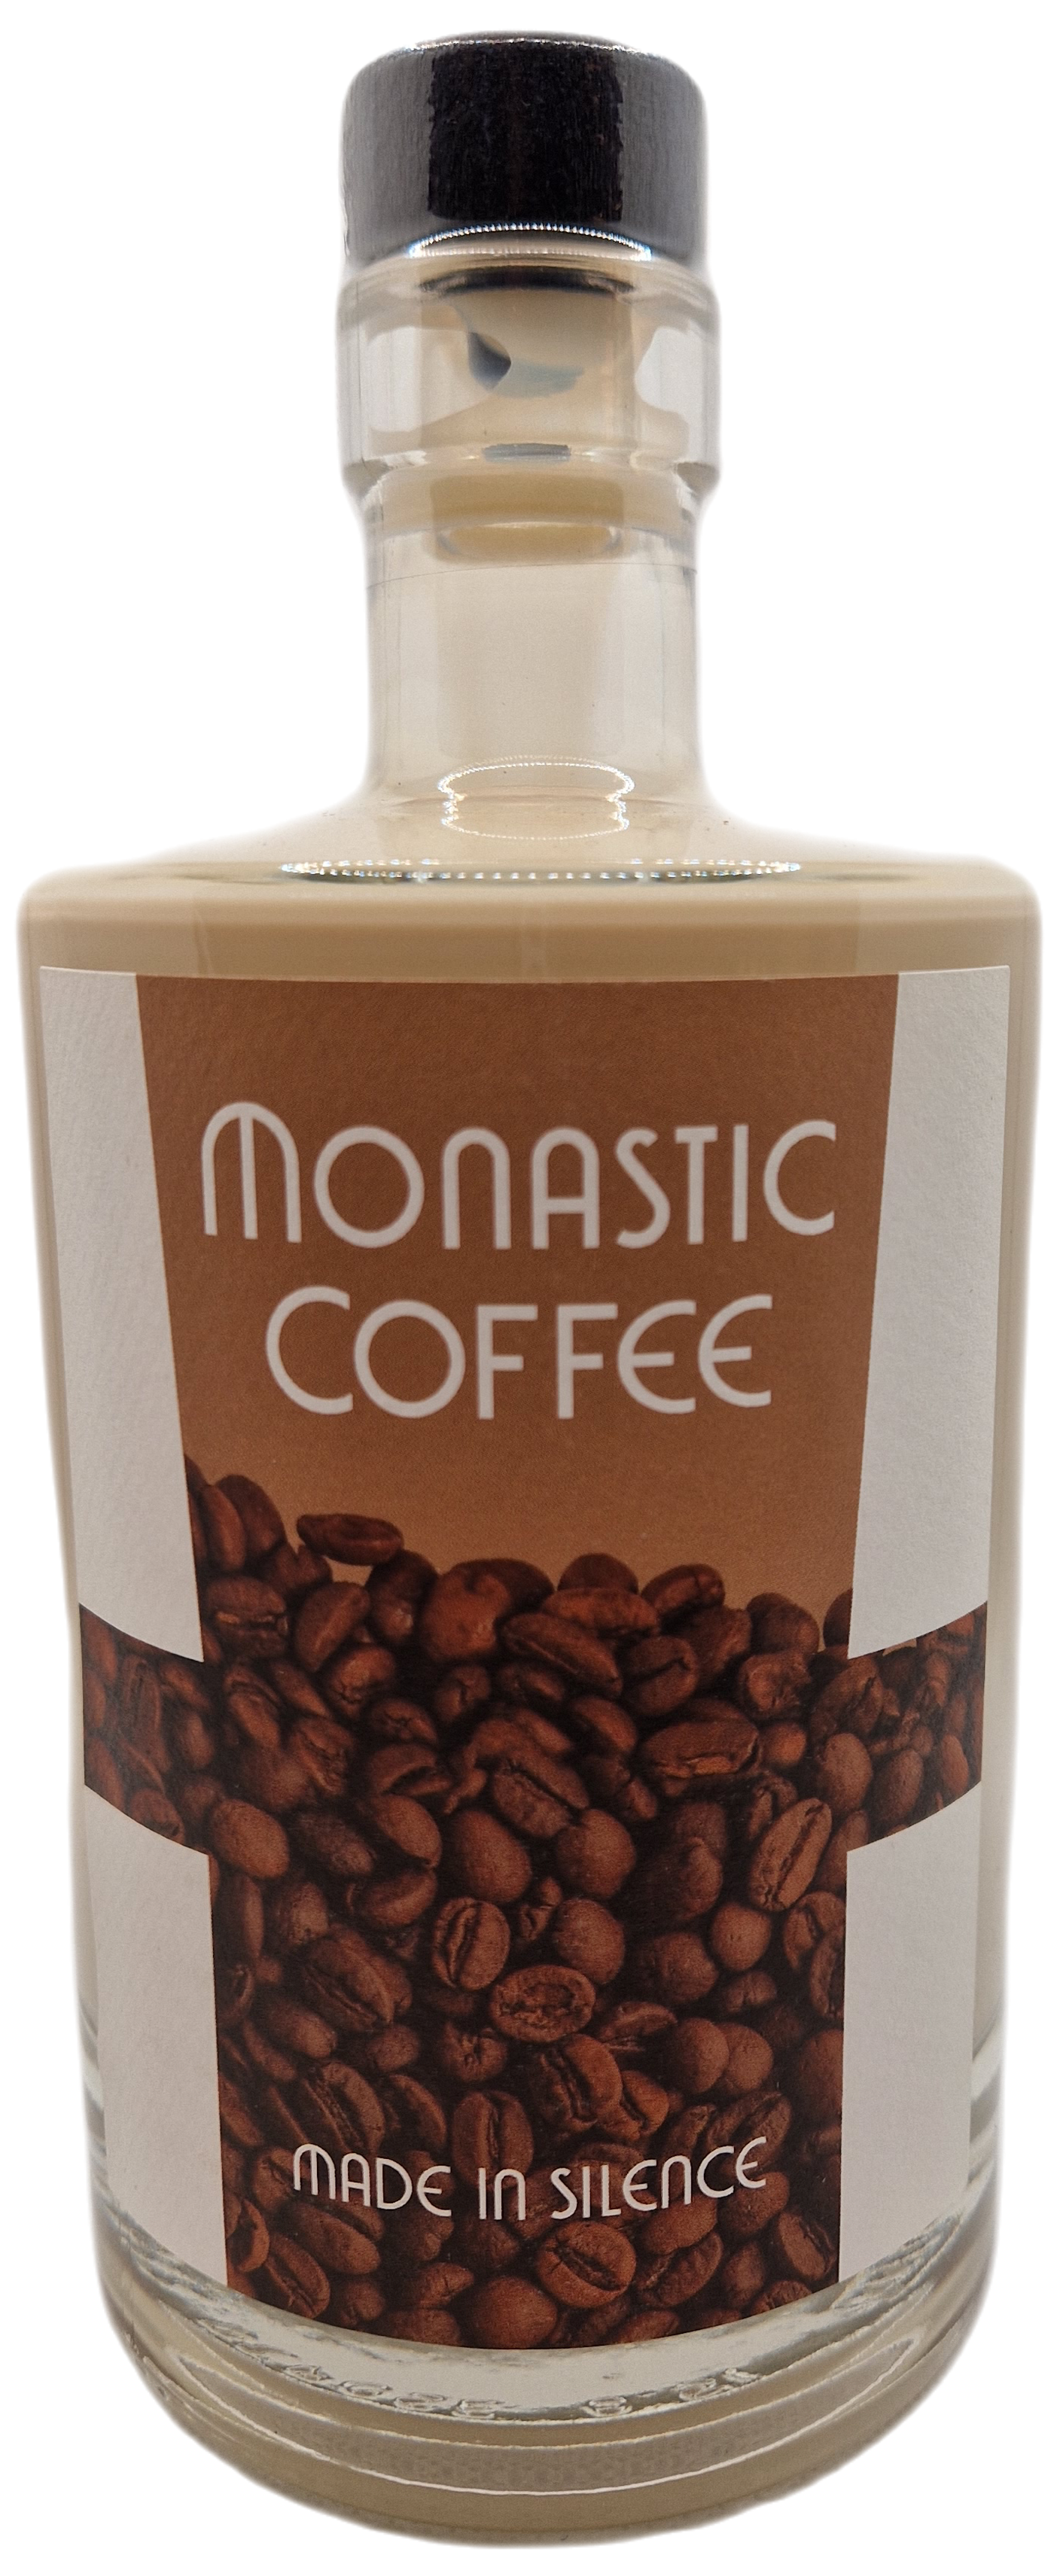 Monastic Coffee "500ml"